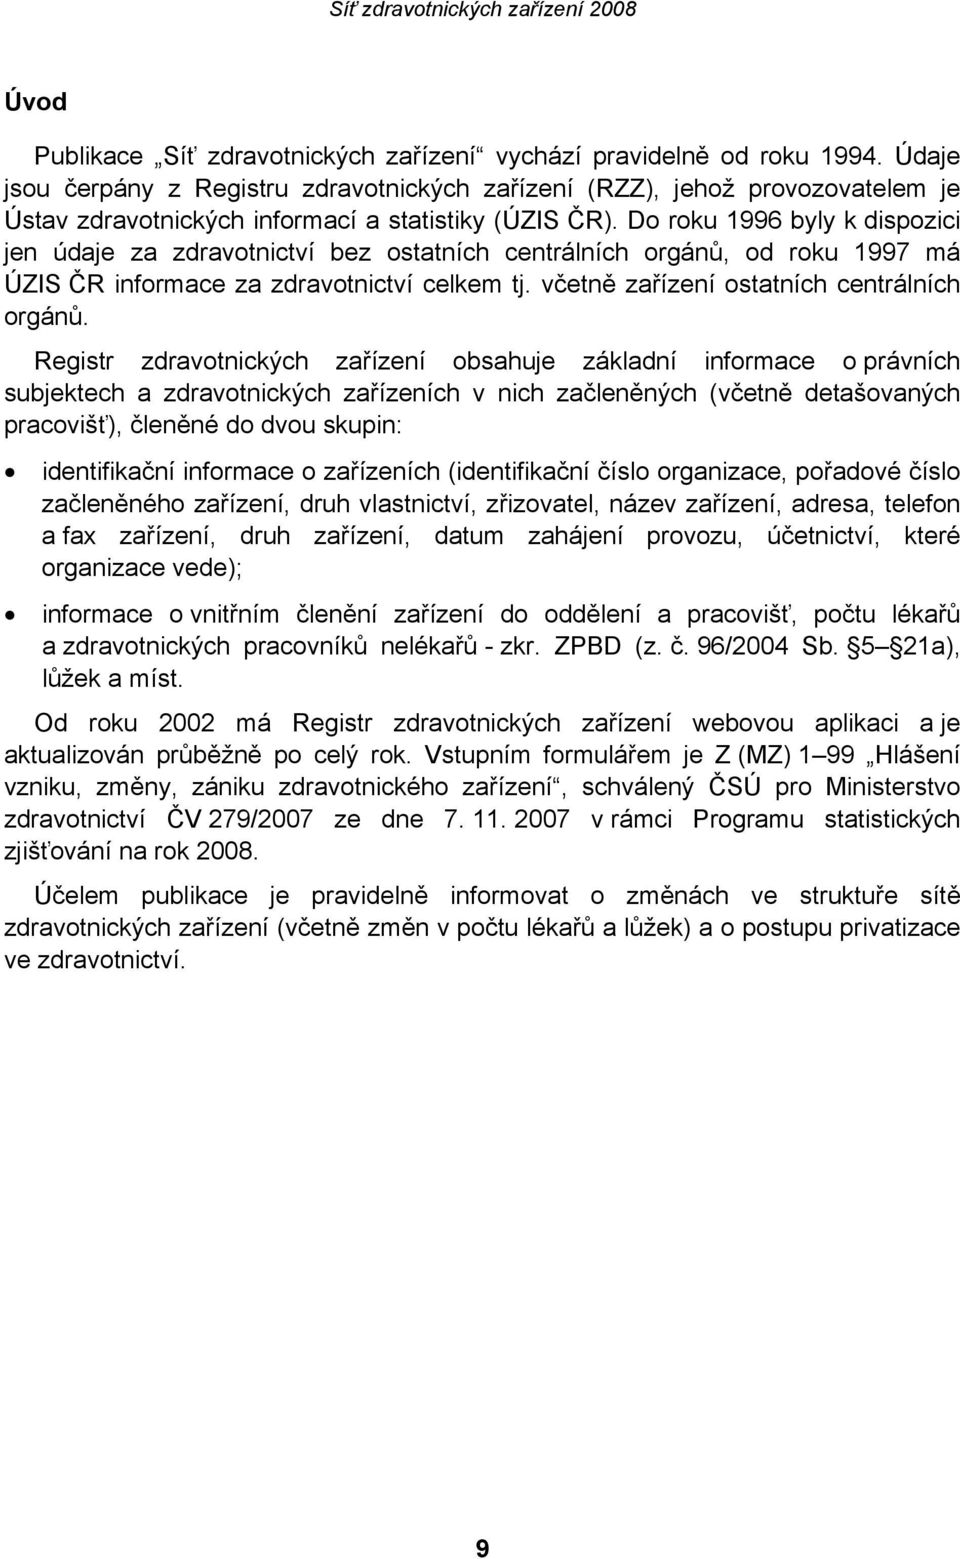 Do roku 1996 byly k dispozici jen údaje za zdravotnictví bez ostatních centrálních orgánů, od roku 1997 má ÚZIS ČR informace za zdravotnictví celkem tj. včetně zařízení ostatních centrálních orgánů.